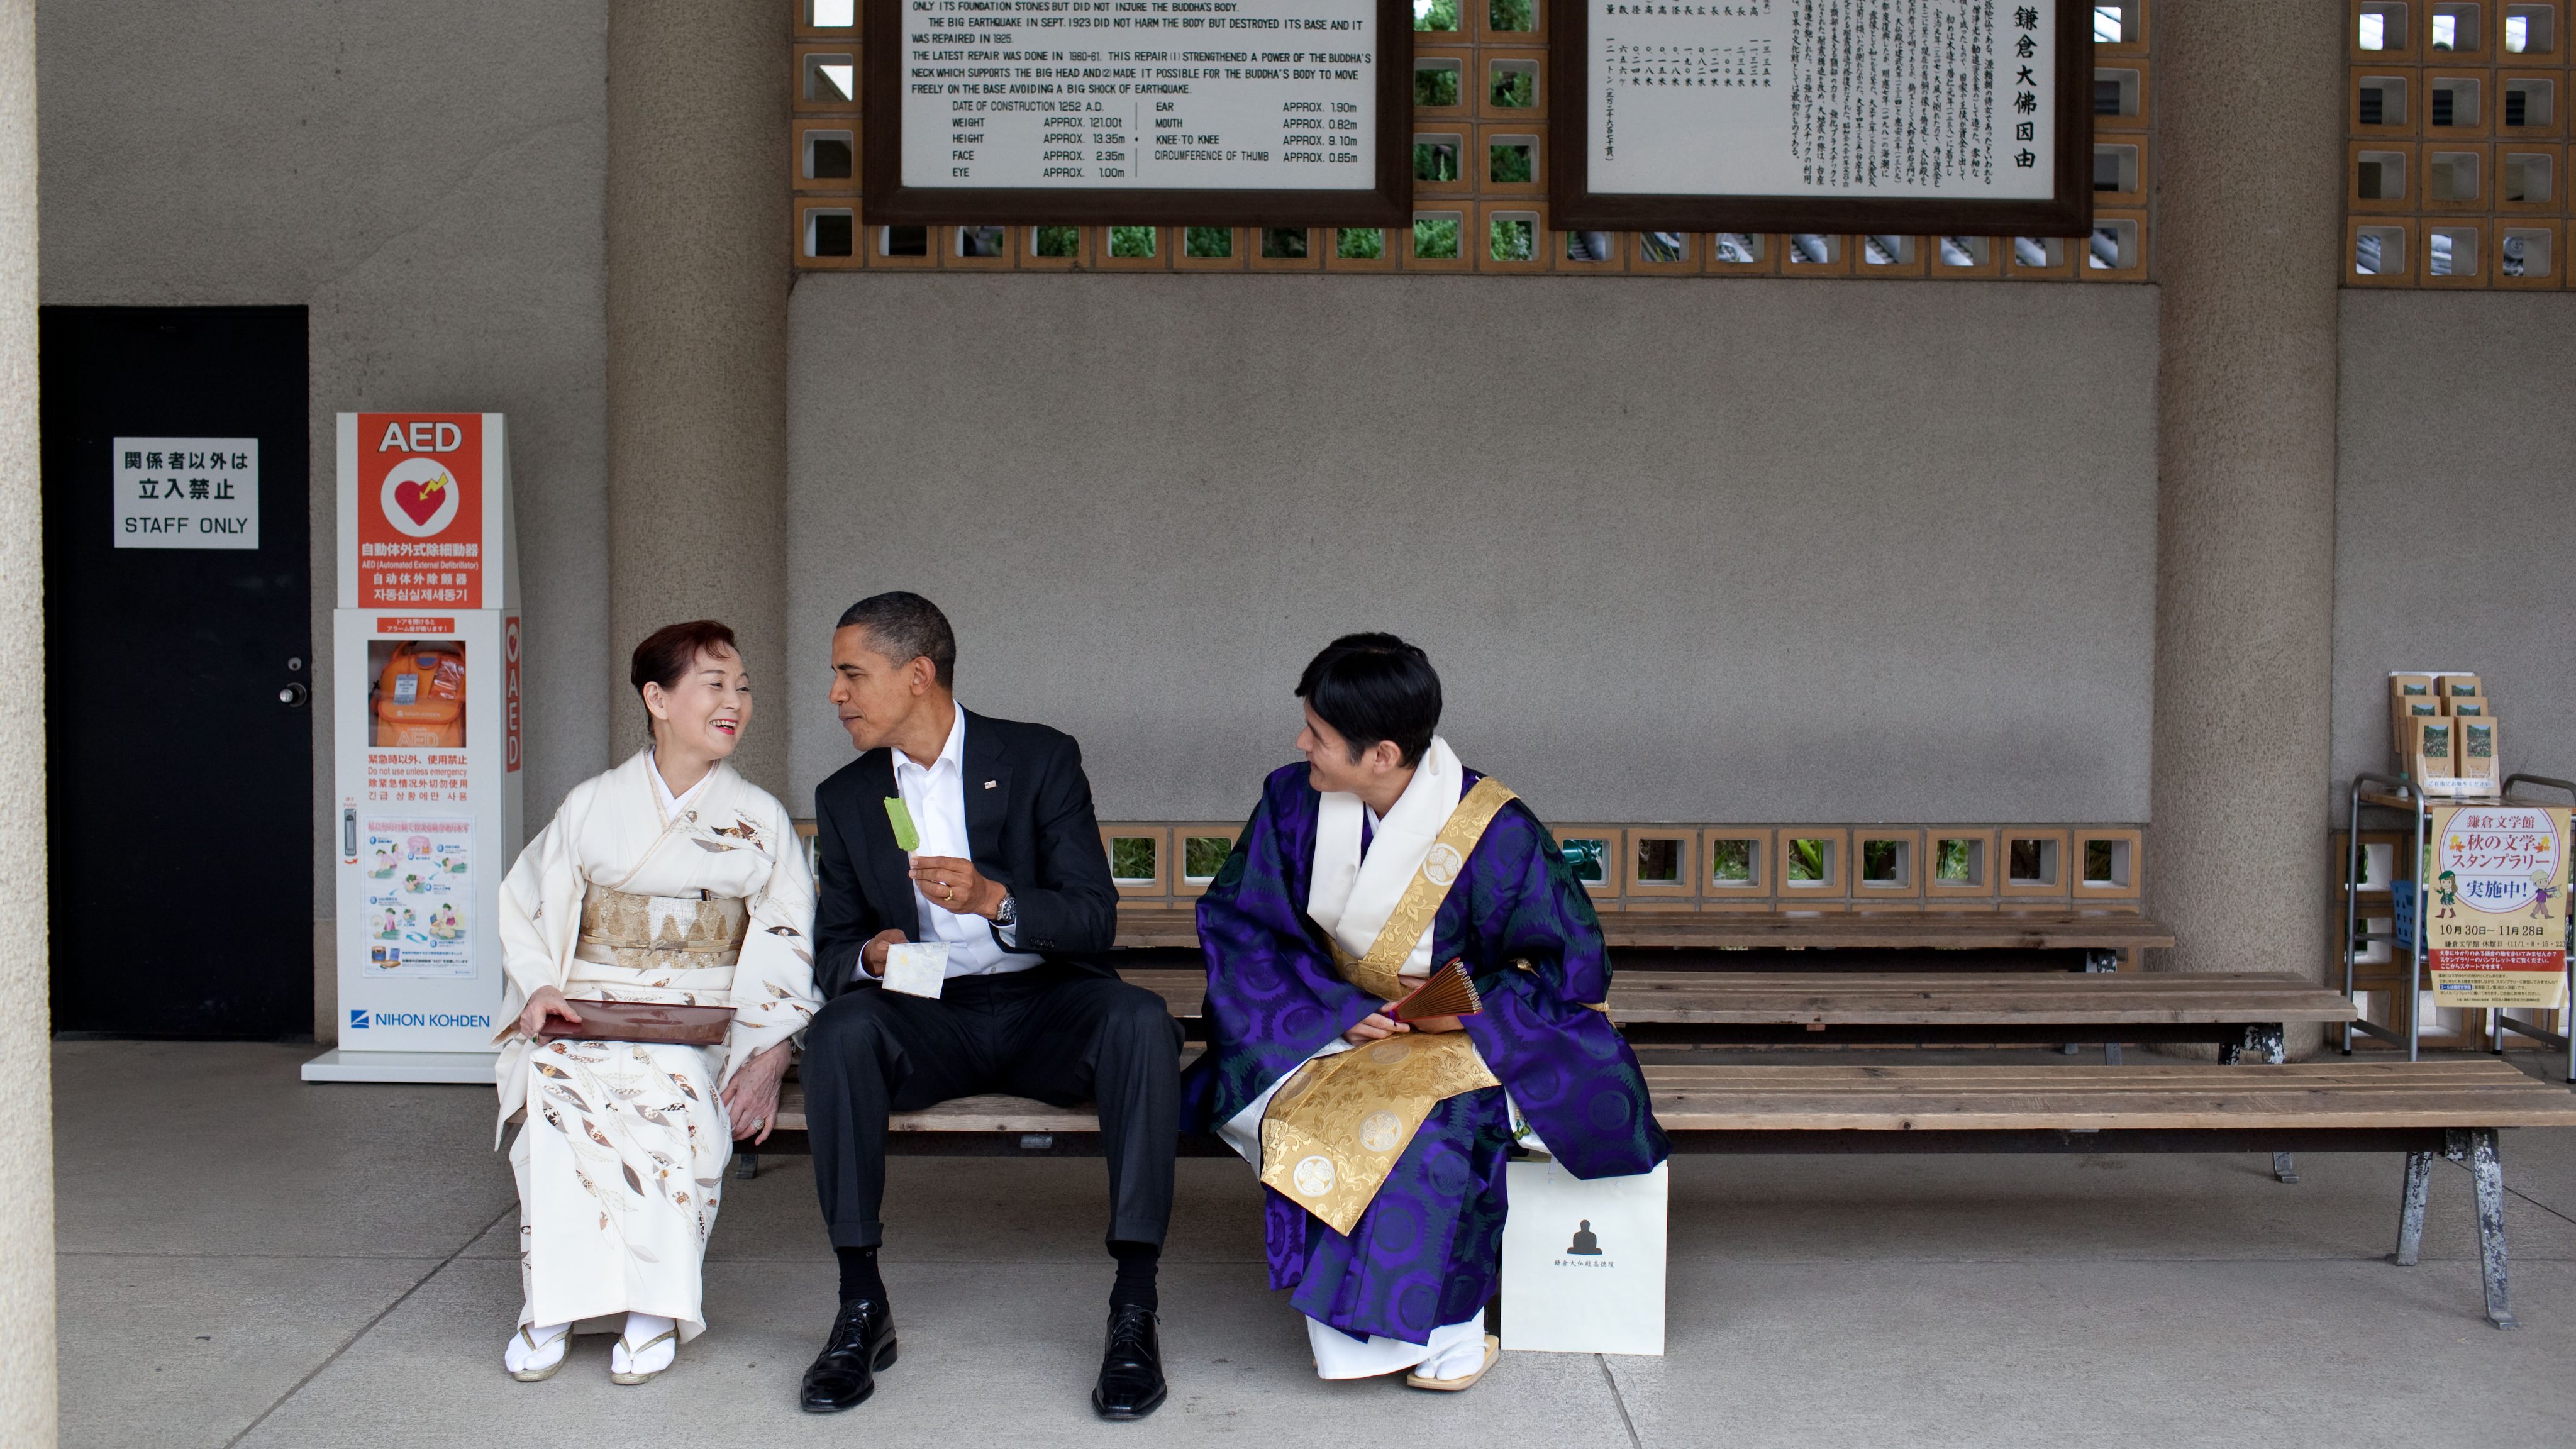 Barak Obama eats green tea ice cream during a visit to Japan.